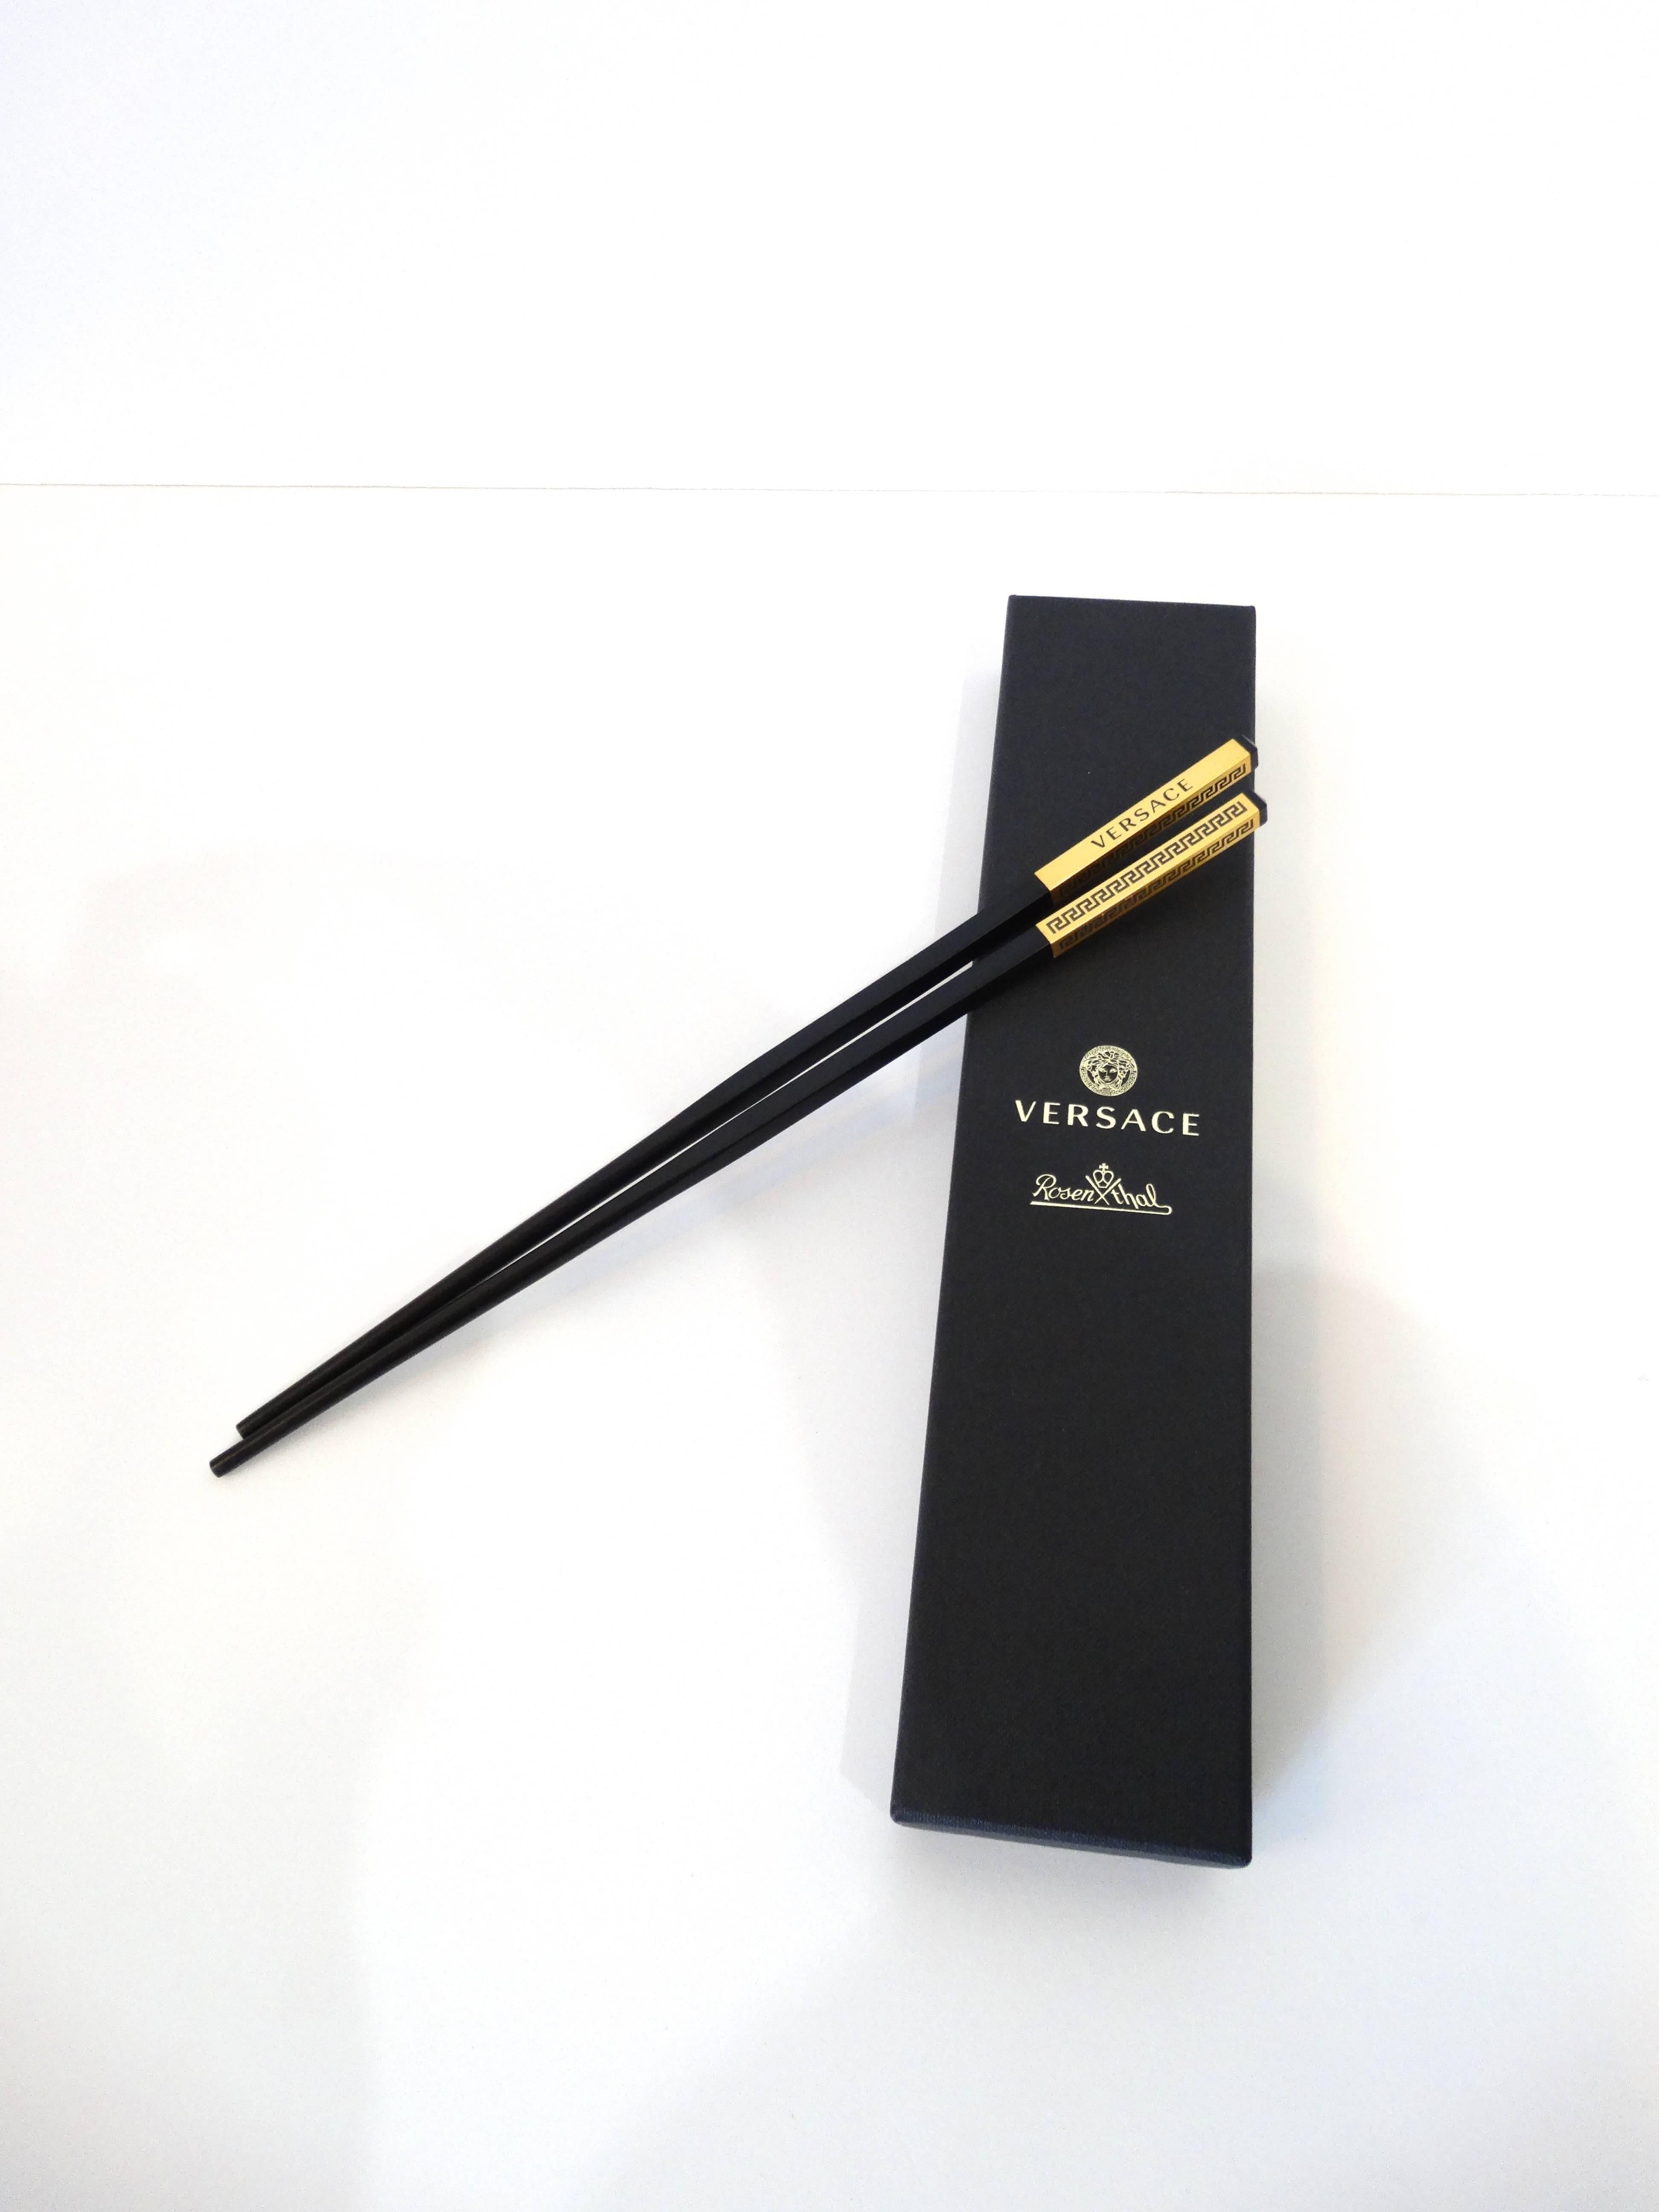 versace chopsticks